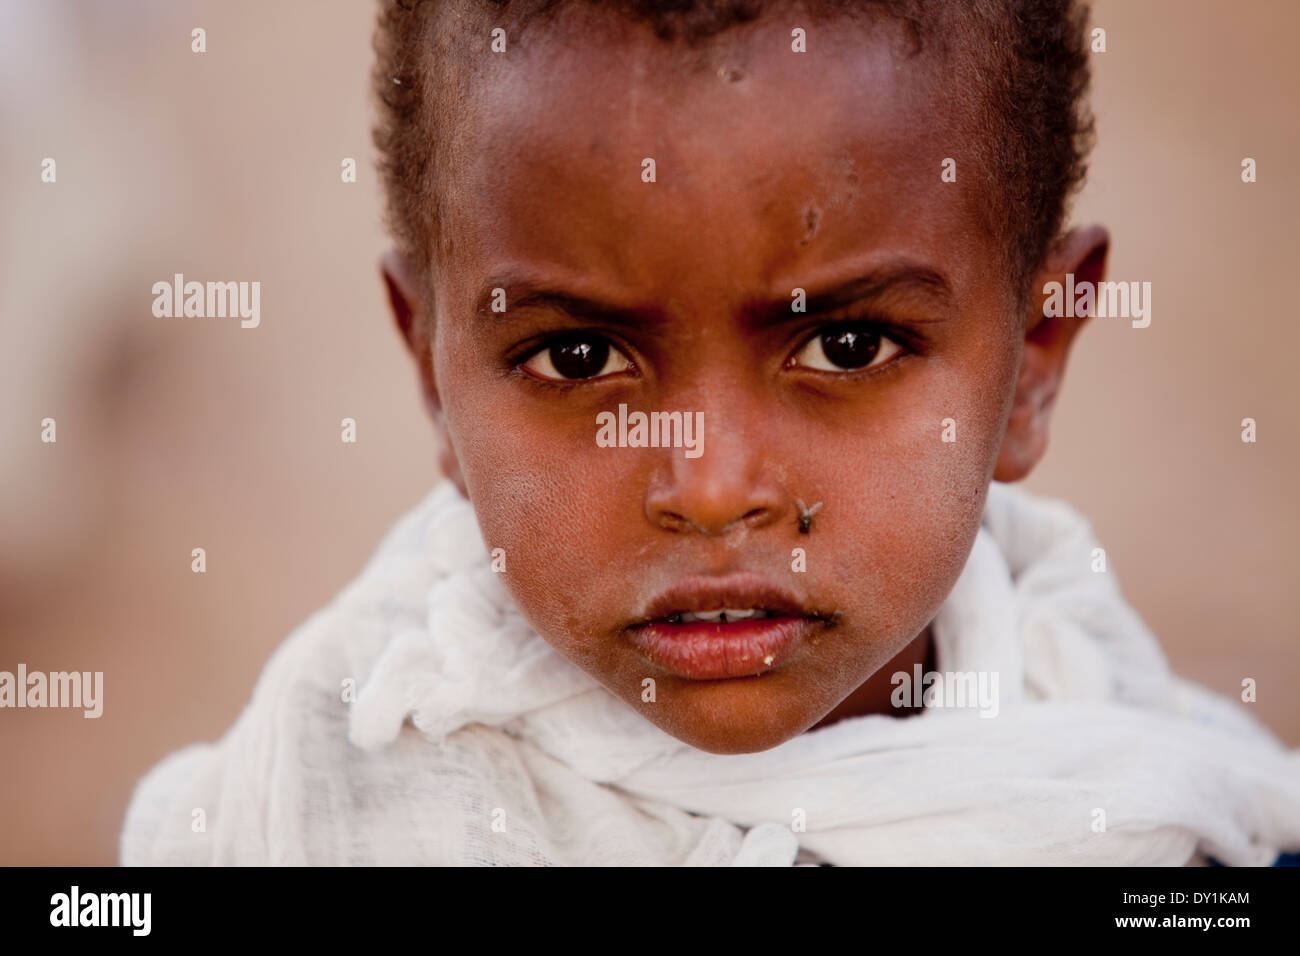 Les jeunes enfants éthiopiens africains avec des mouches sur le visage Banque D'Images